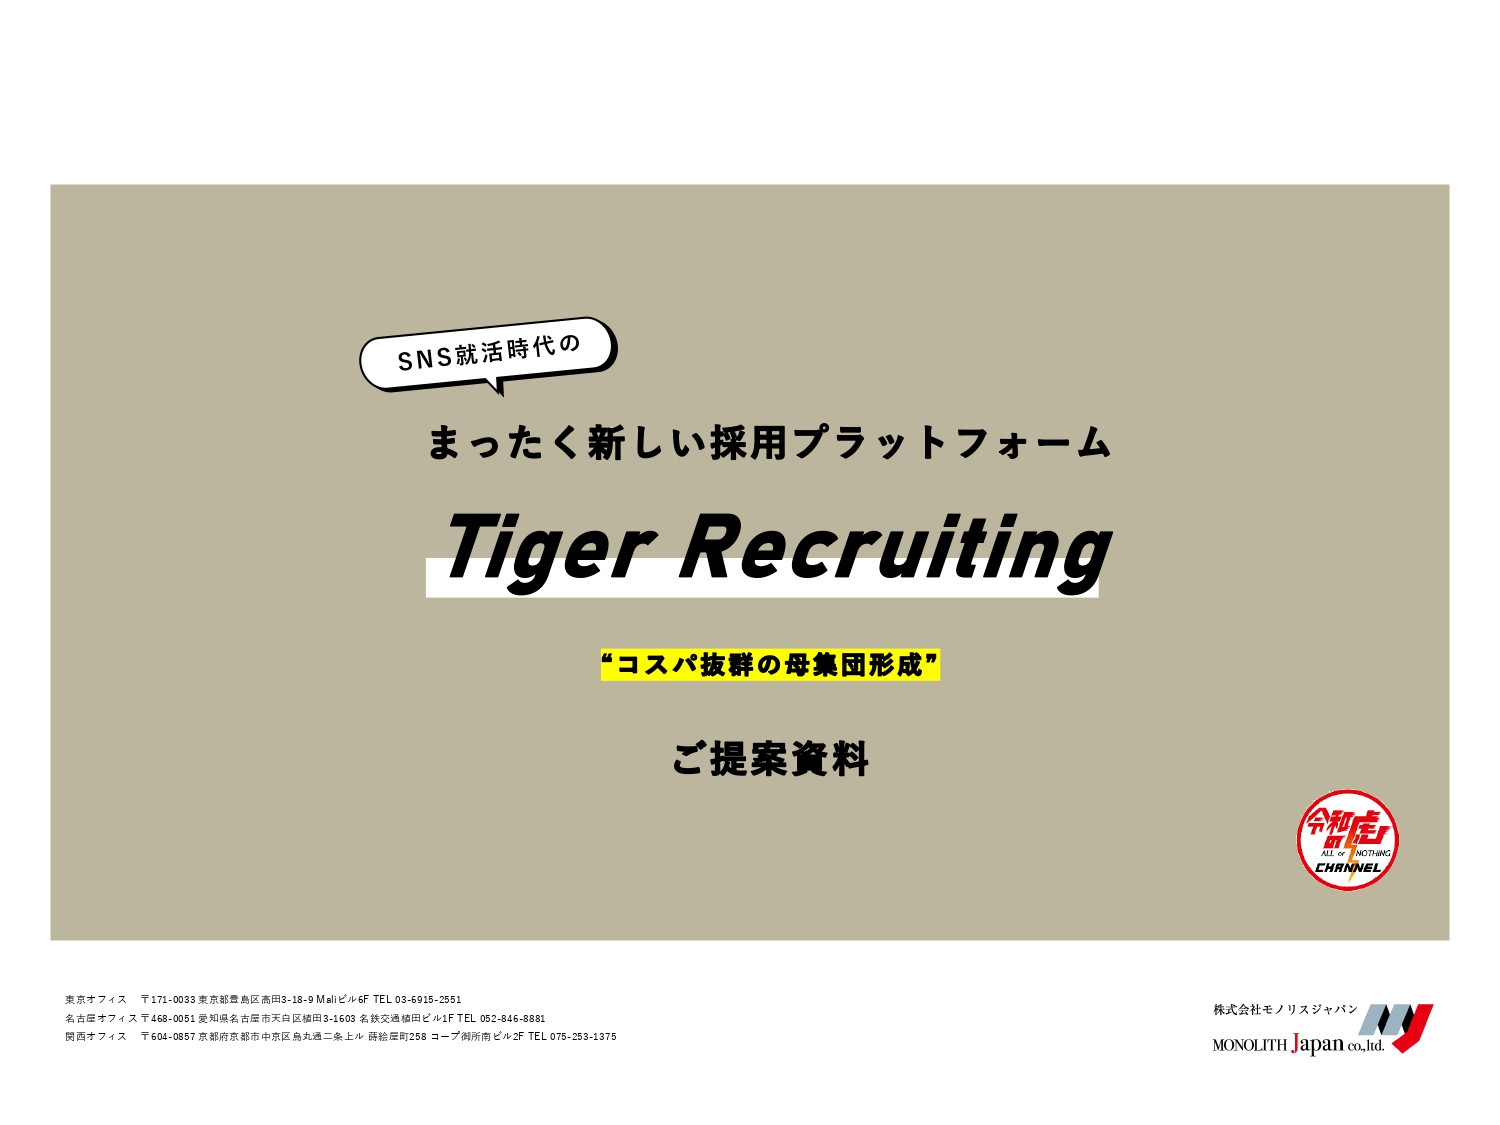 Sns時代のまったく新しい採用プラットフォーム Tiger Recruiting 株式会社 Monolith Japan